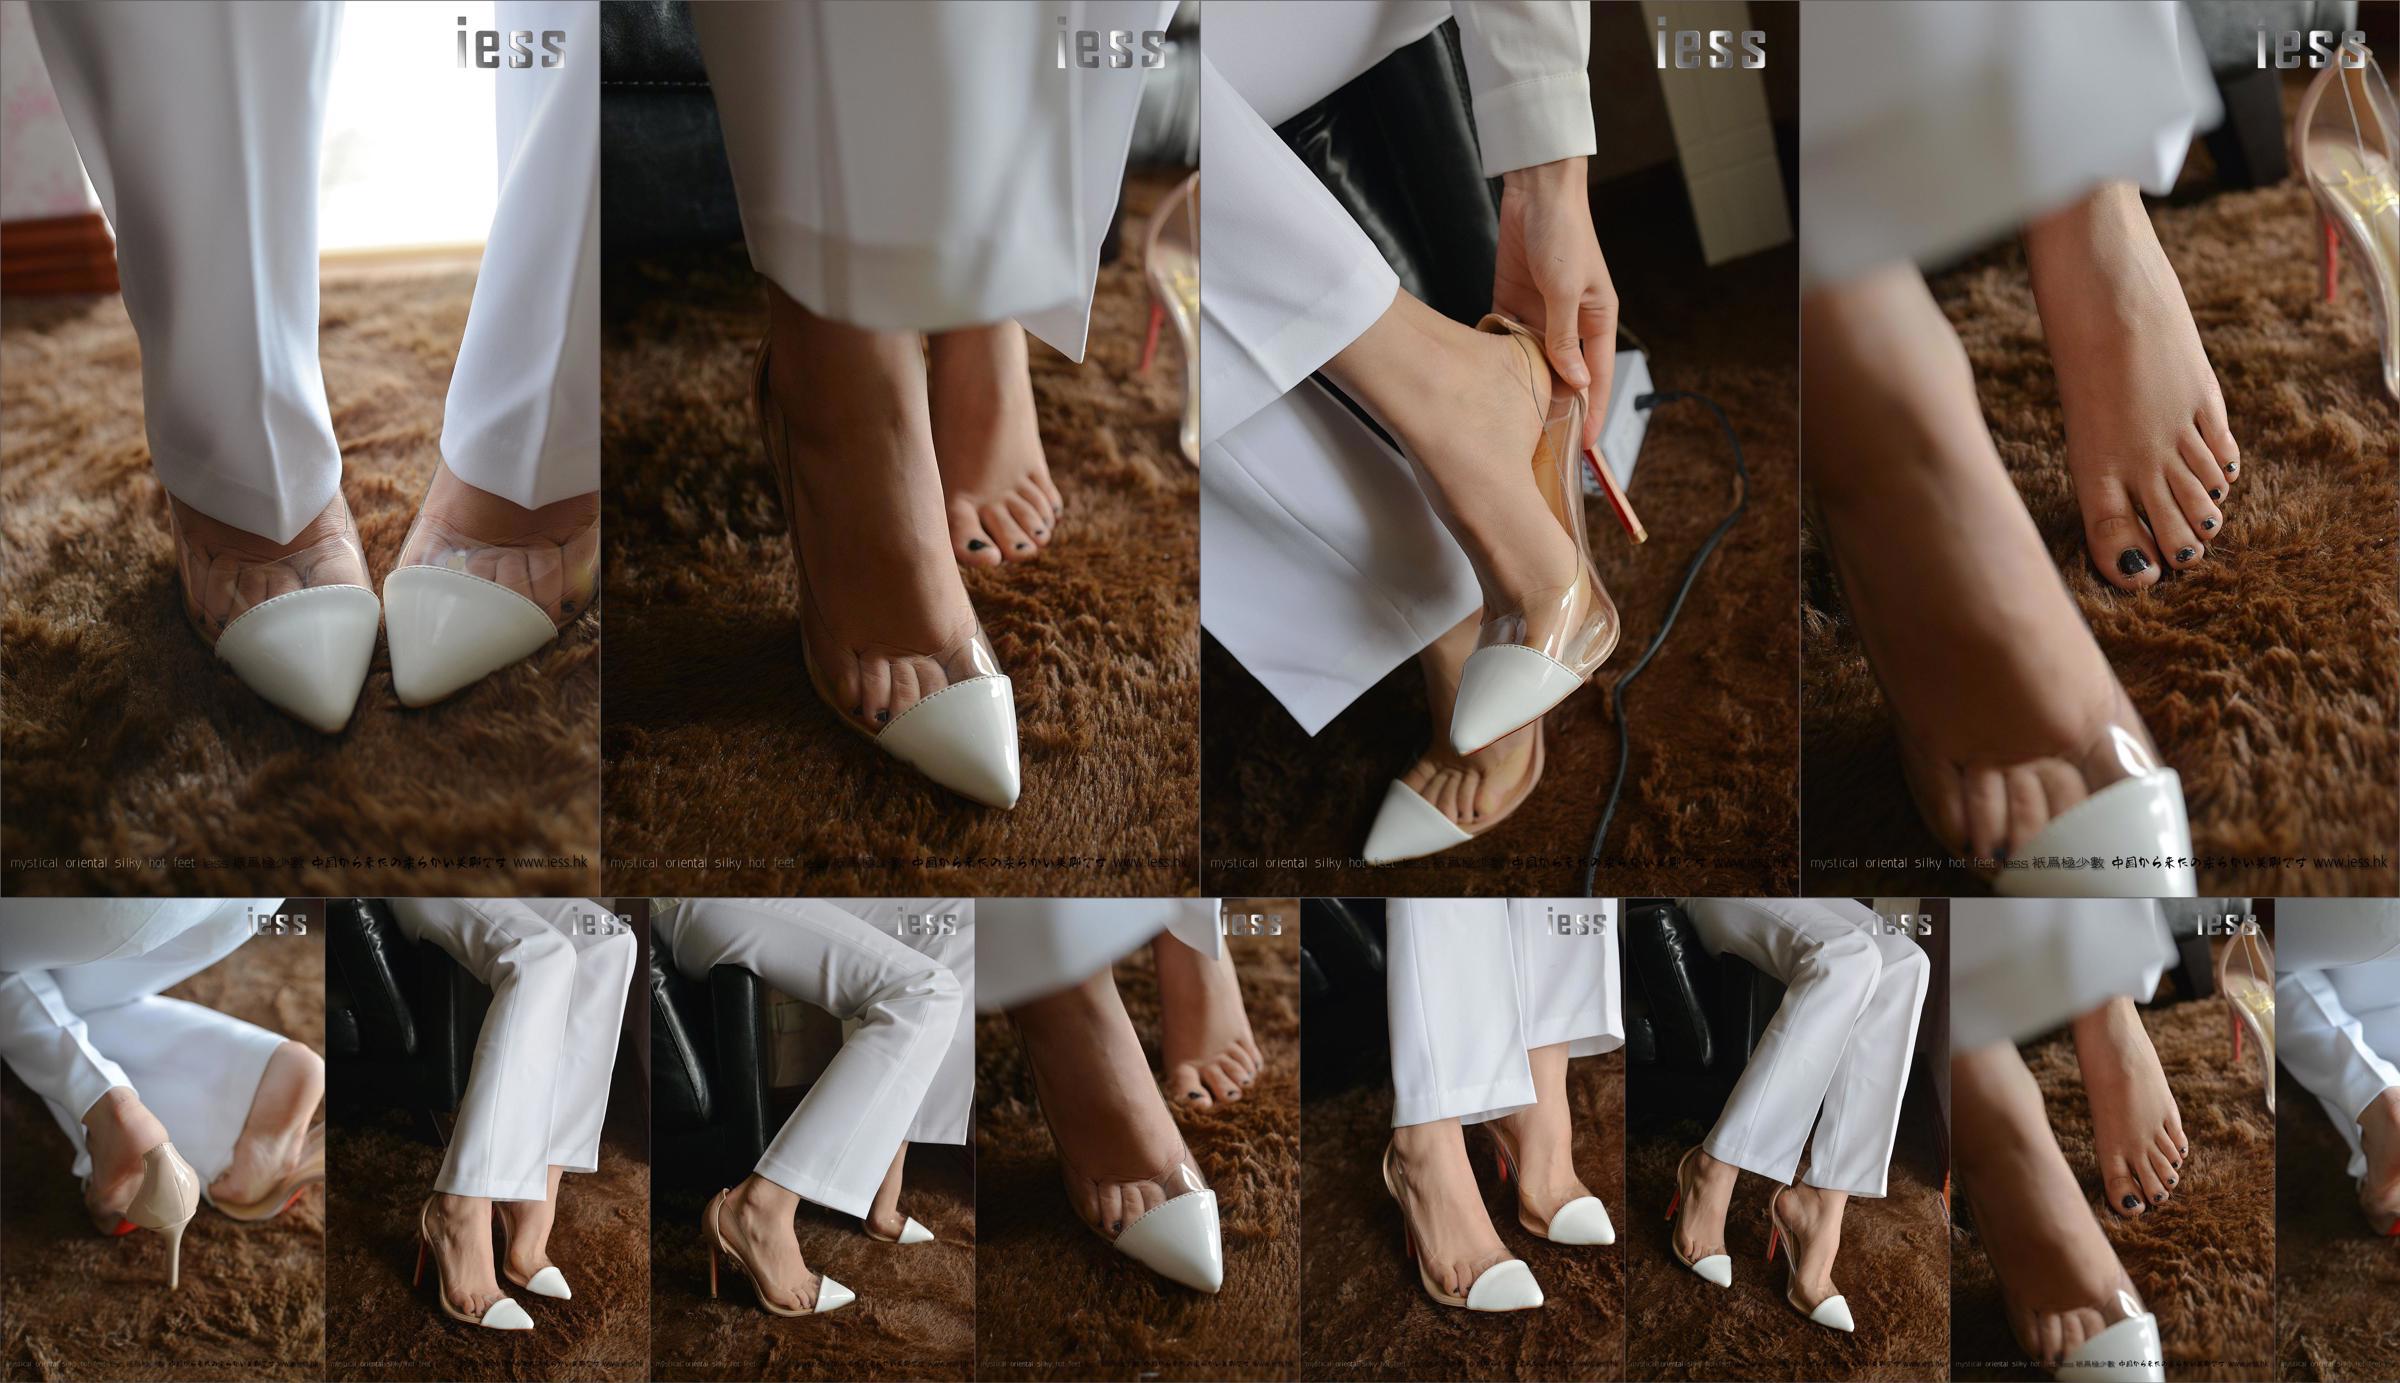 Silky Foot Bento 058 Hồi hộp "Bộ sưu tập-Giày cao gót chân trần" [IESS Wei Si Fun Xiang] No.7e5873 Trang 3